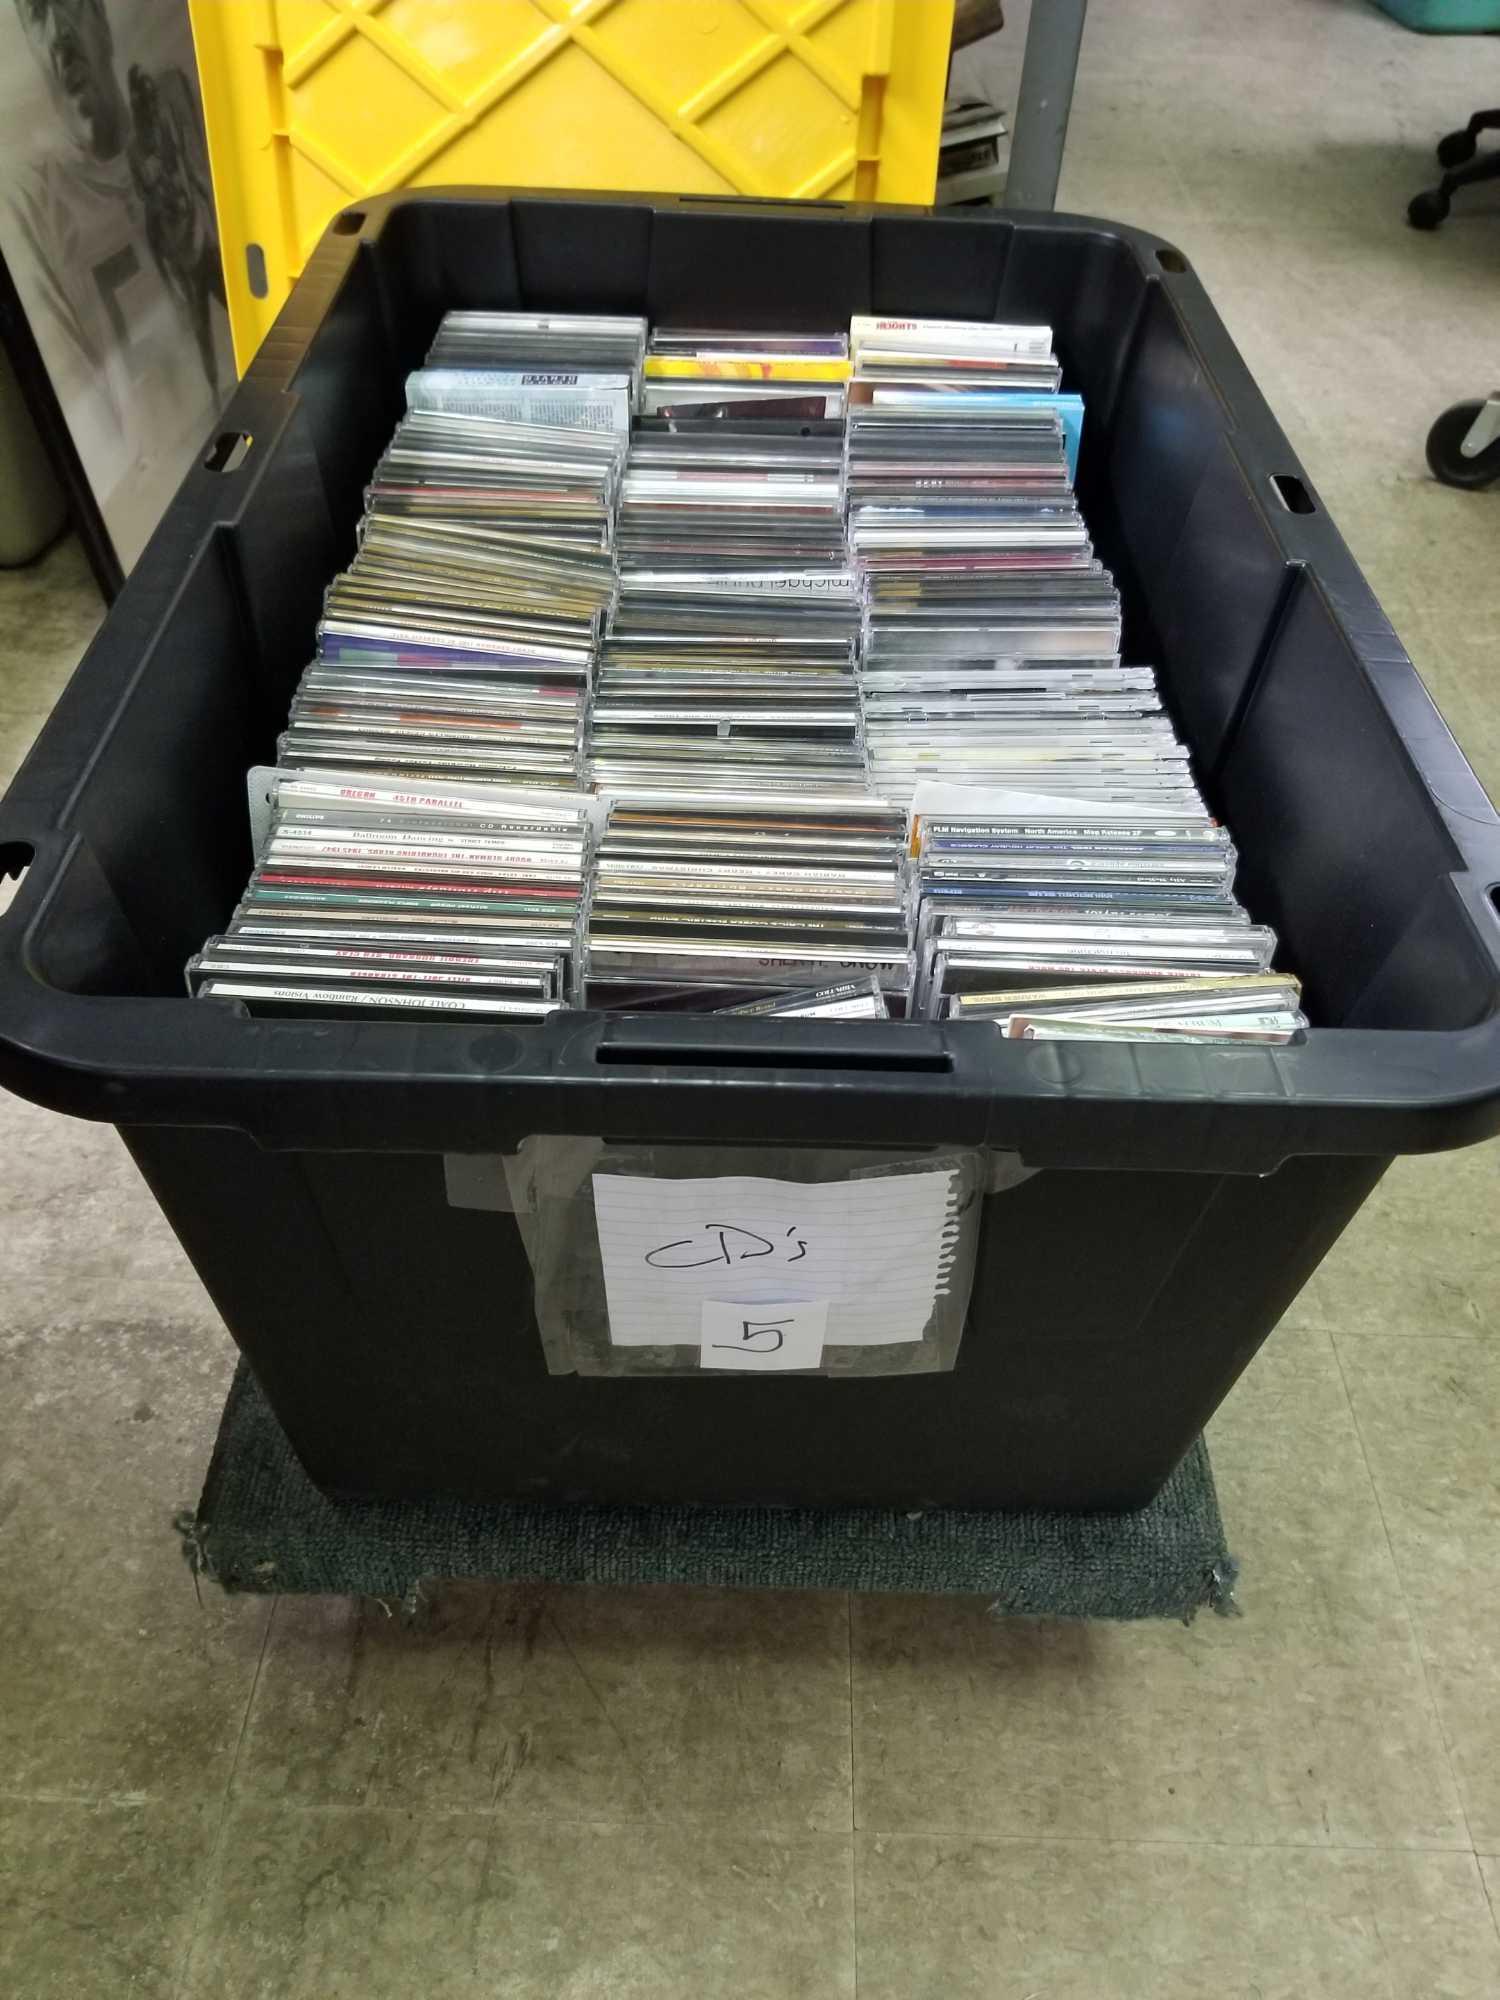 Bin Full of CDs